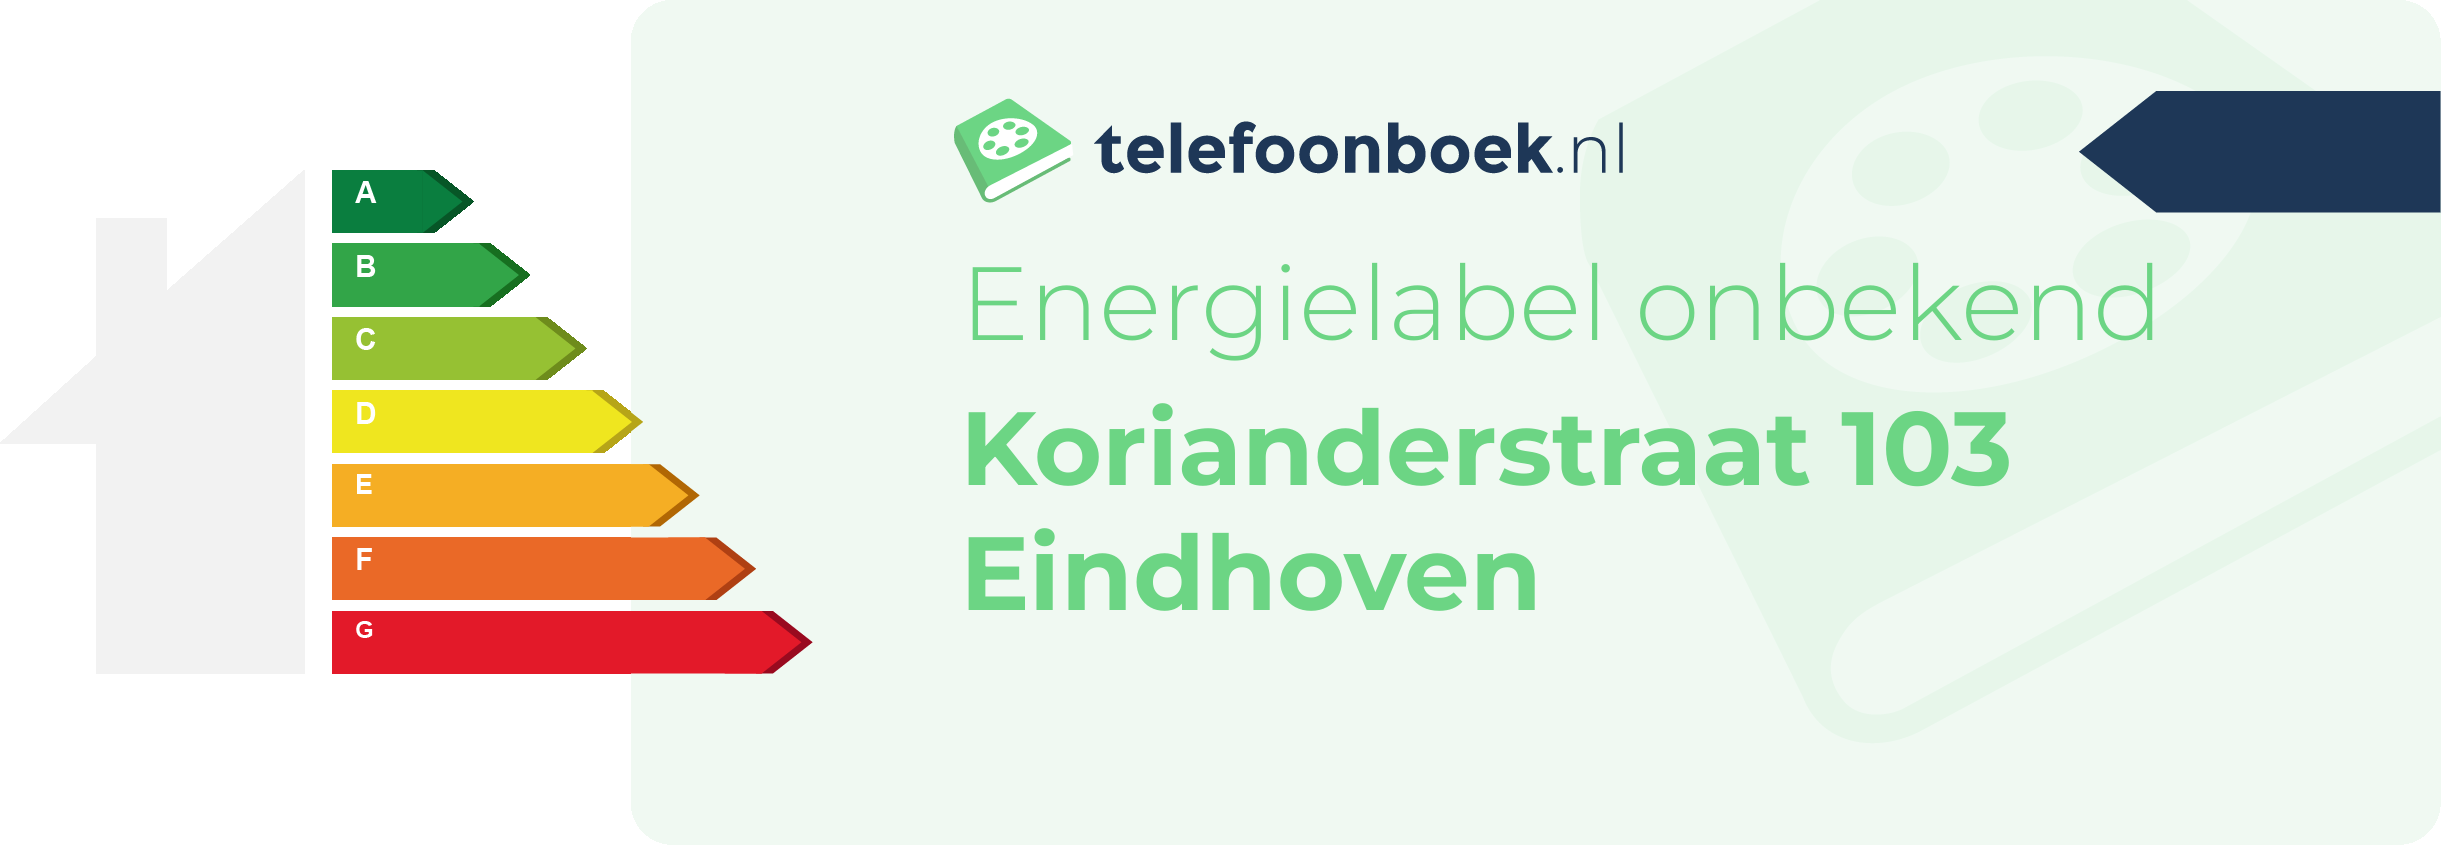 Energielabel Korianderstraat 103 Eindhoven